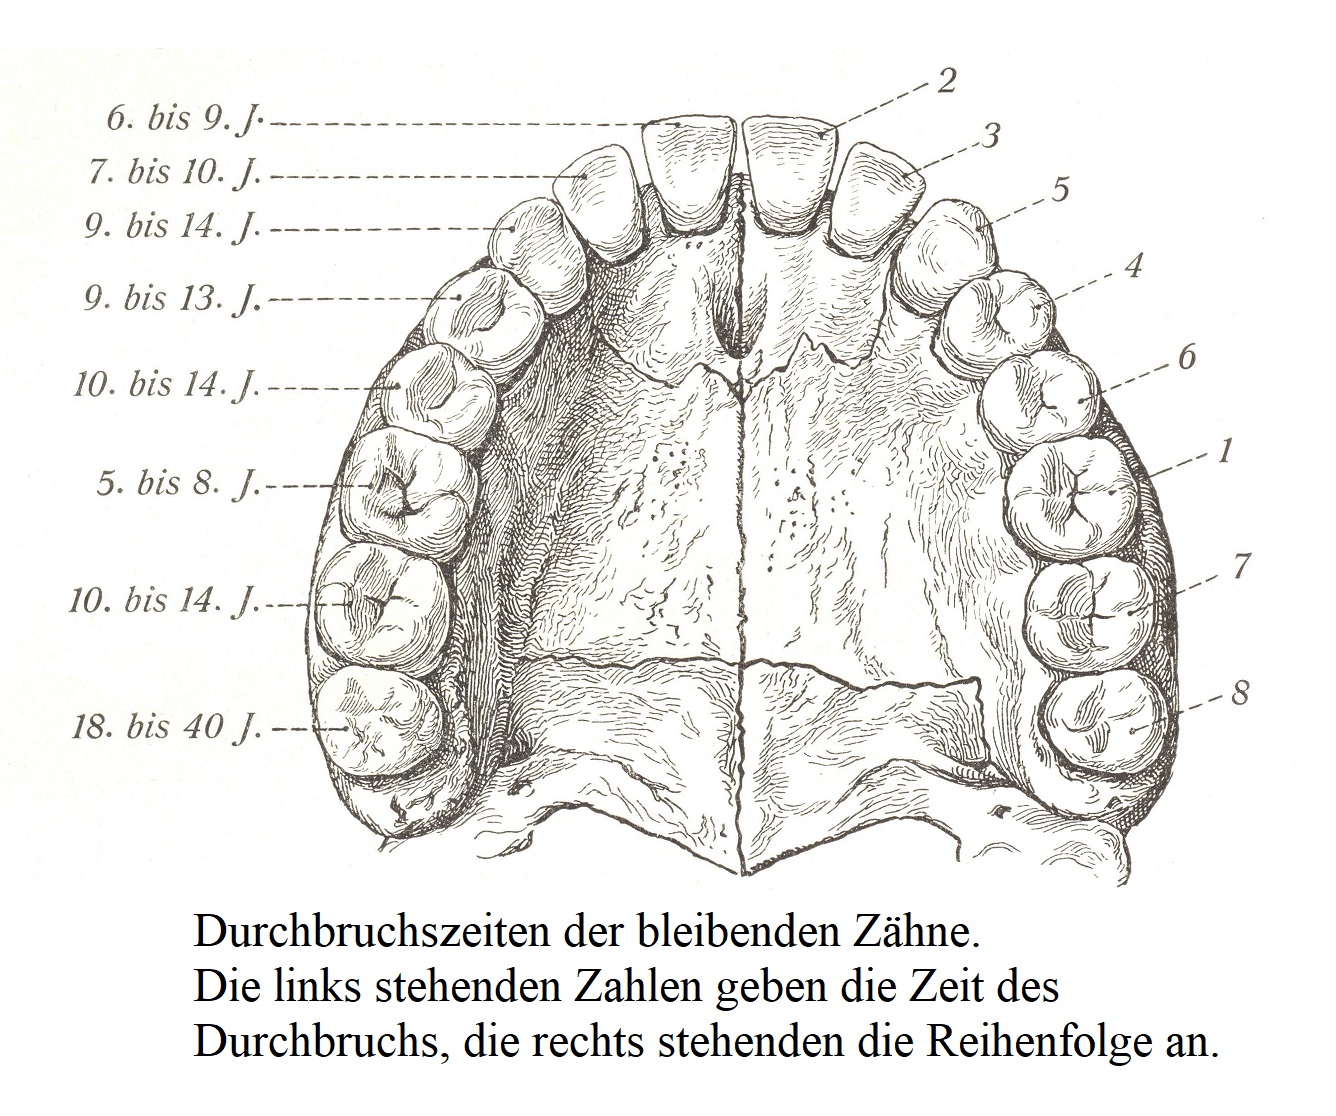 Сроки прорезывания постоянных зубов. Цифры слева обозначают время прорыва, справа - порядок.